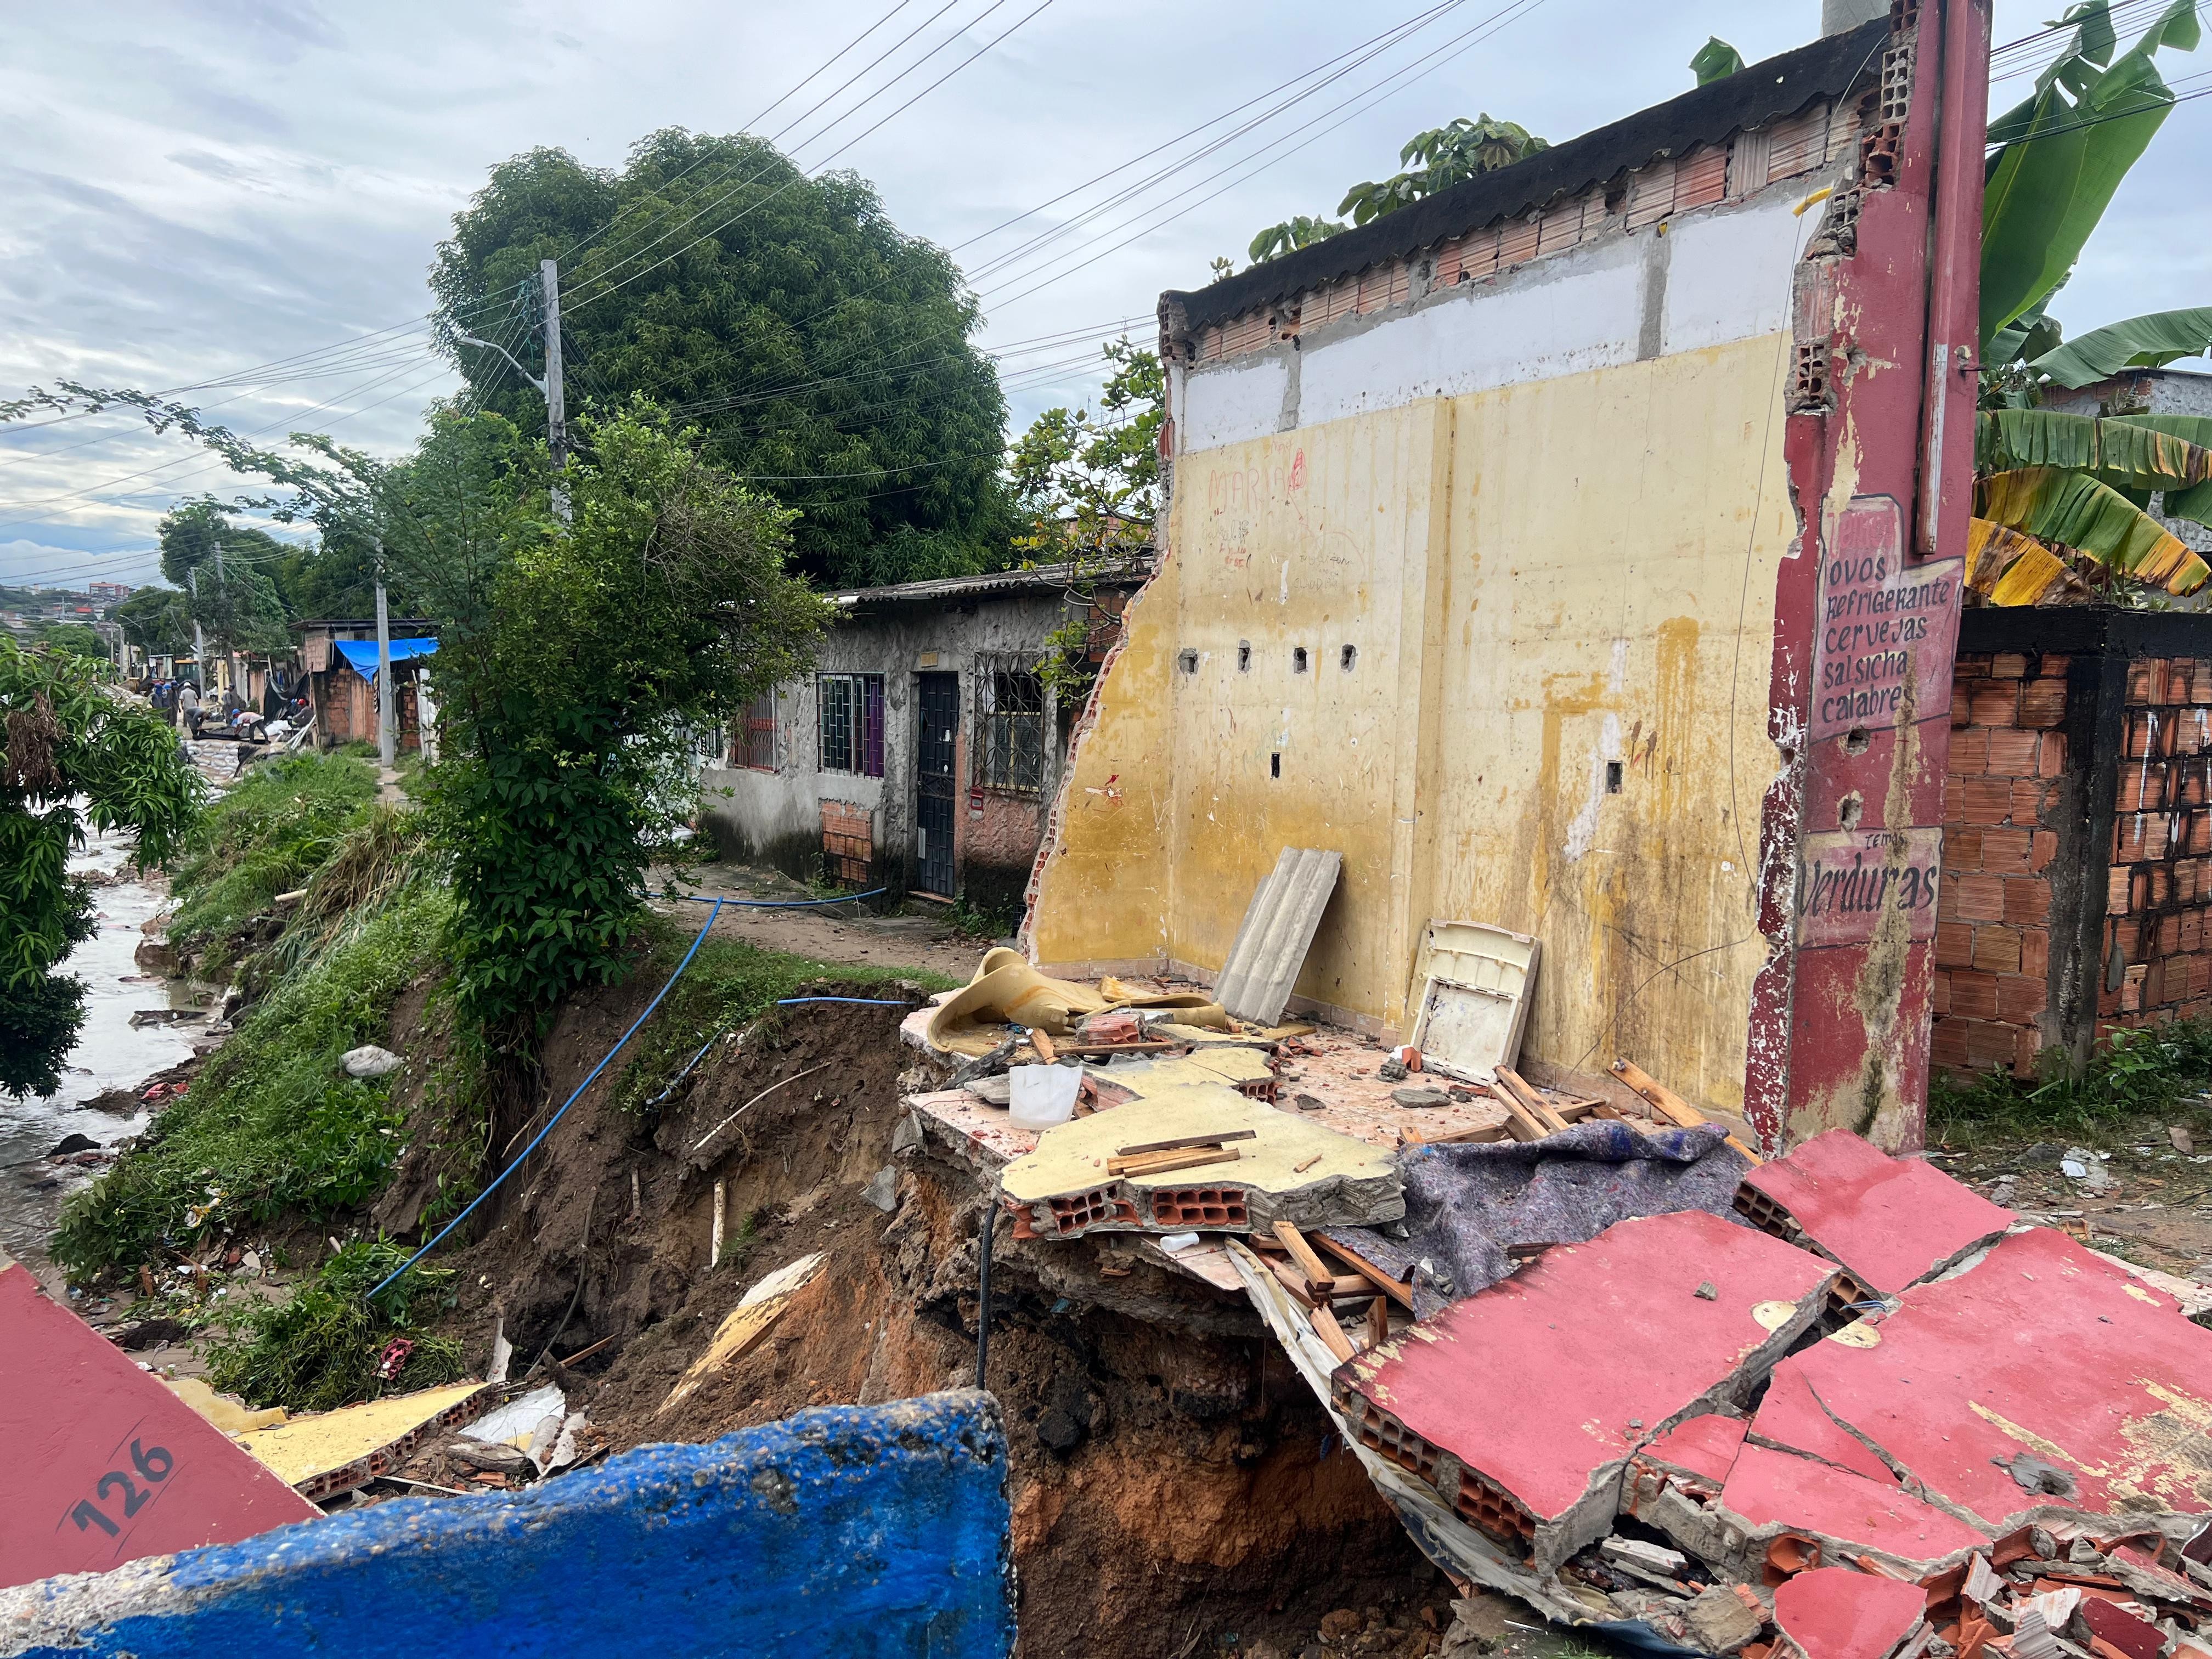 Casa a beira de igarapé desaba durante chuva que atinge Manaus nesta terça-feira (7)